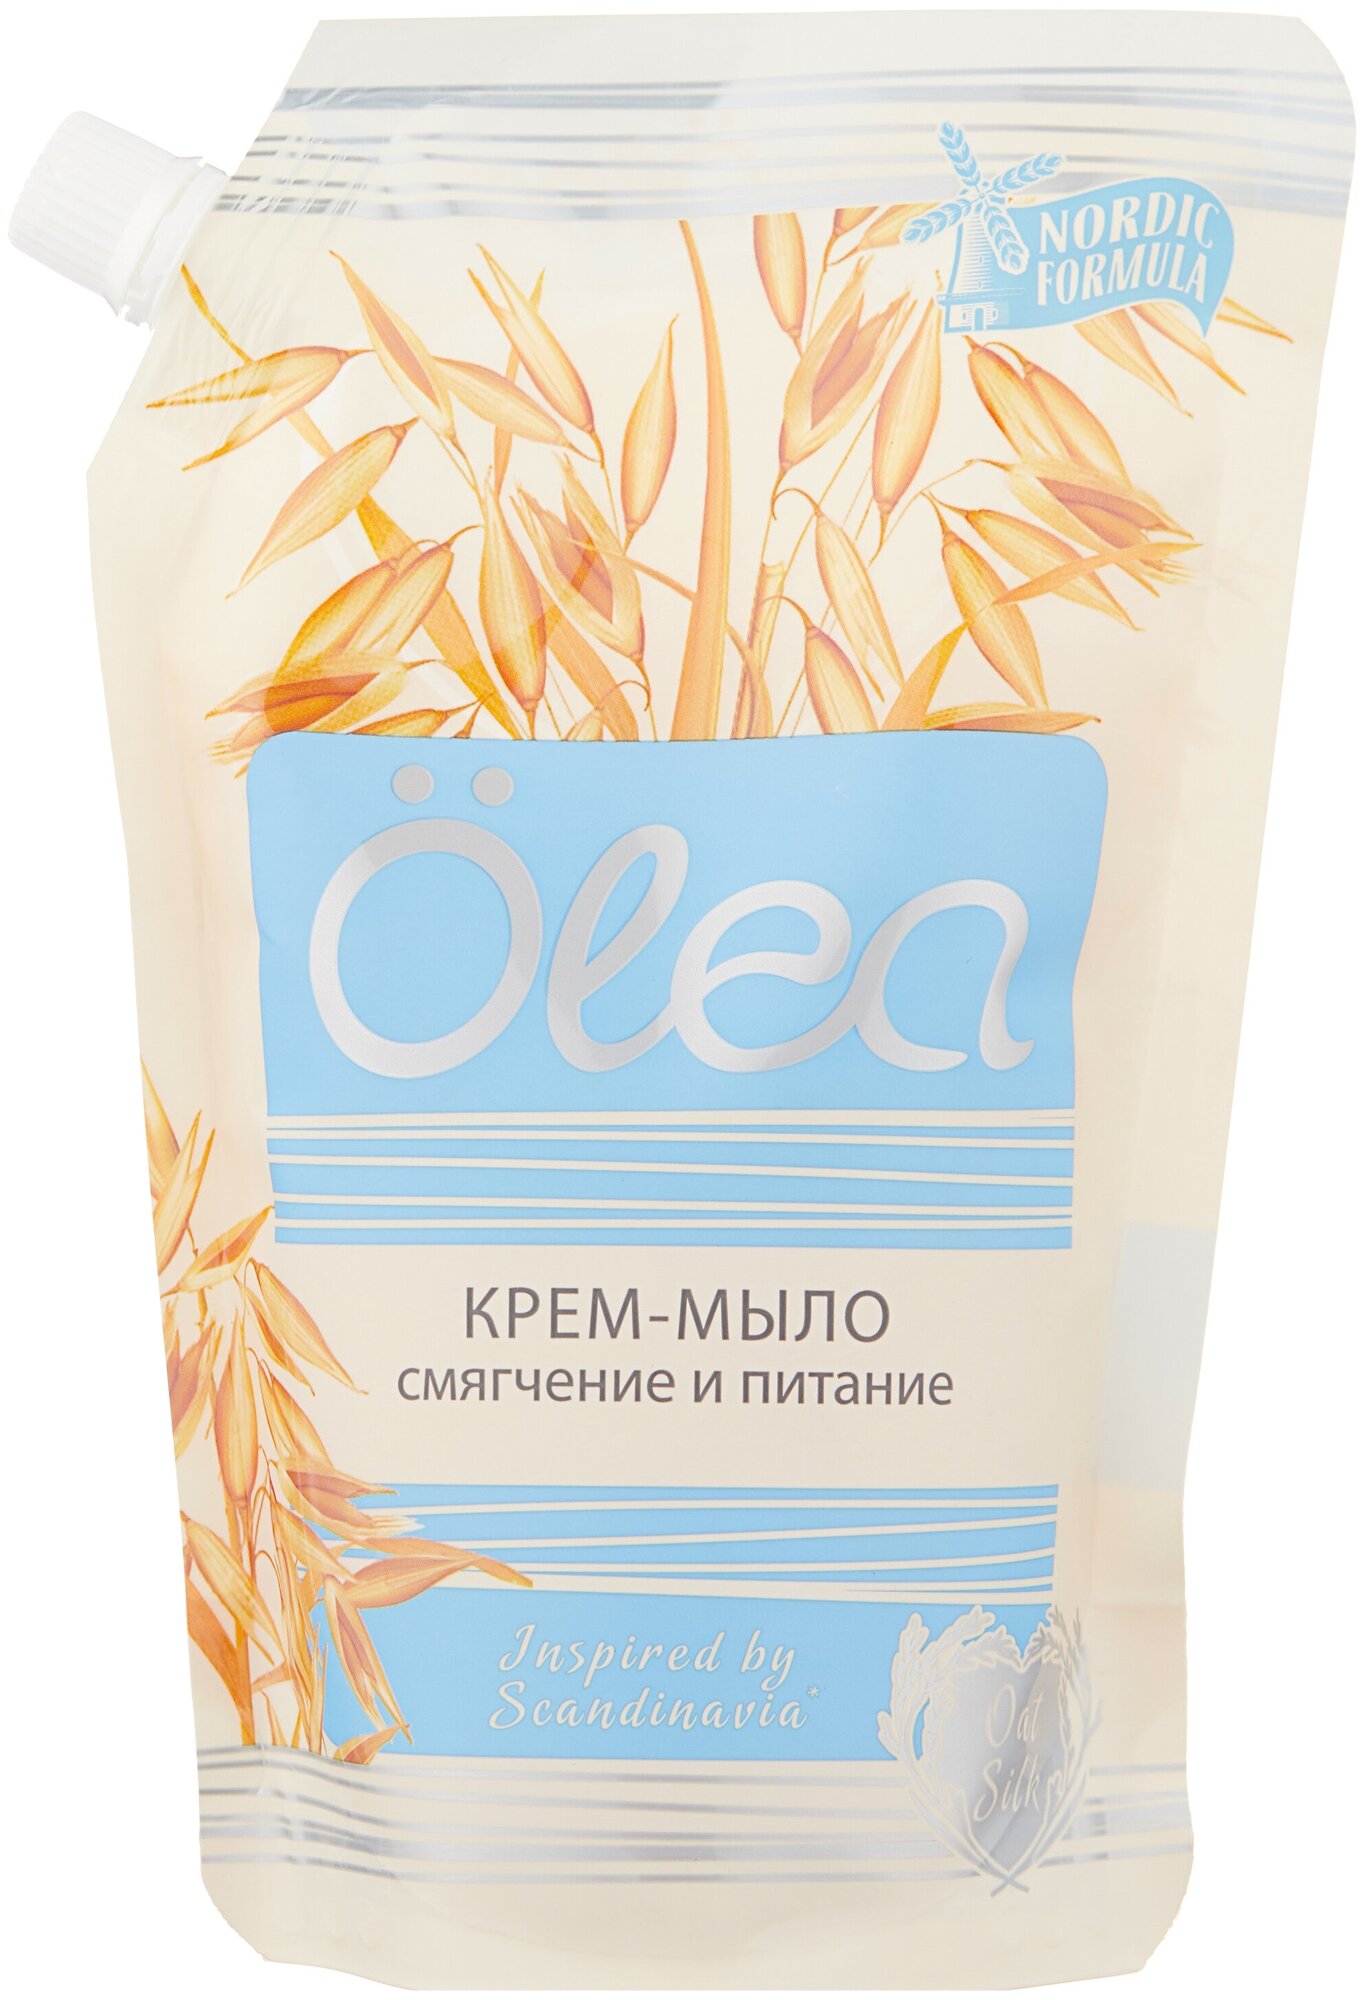 Крем-мыло OLEA Oat silk Cмягчение и питание 500 мл